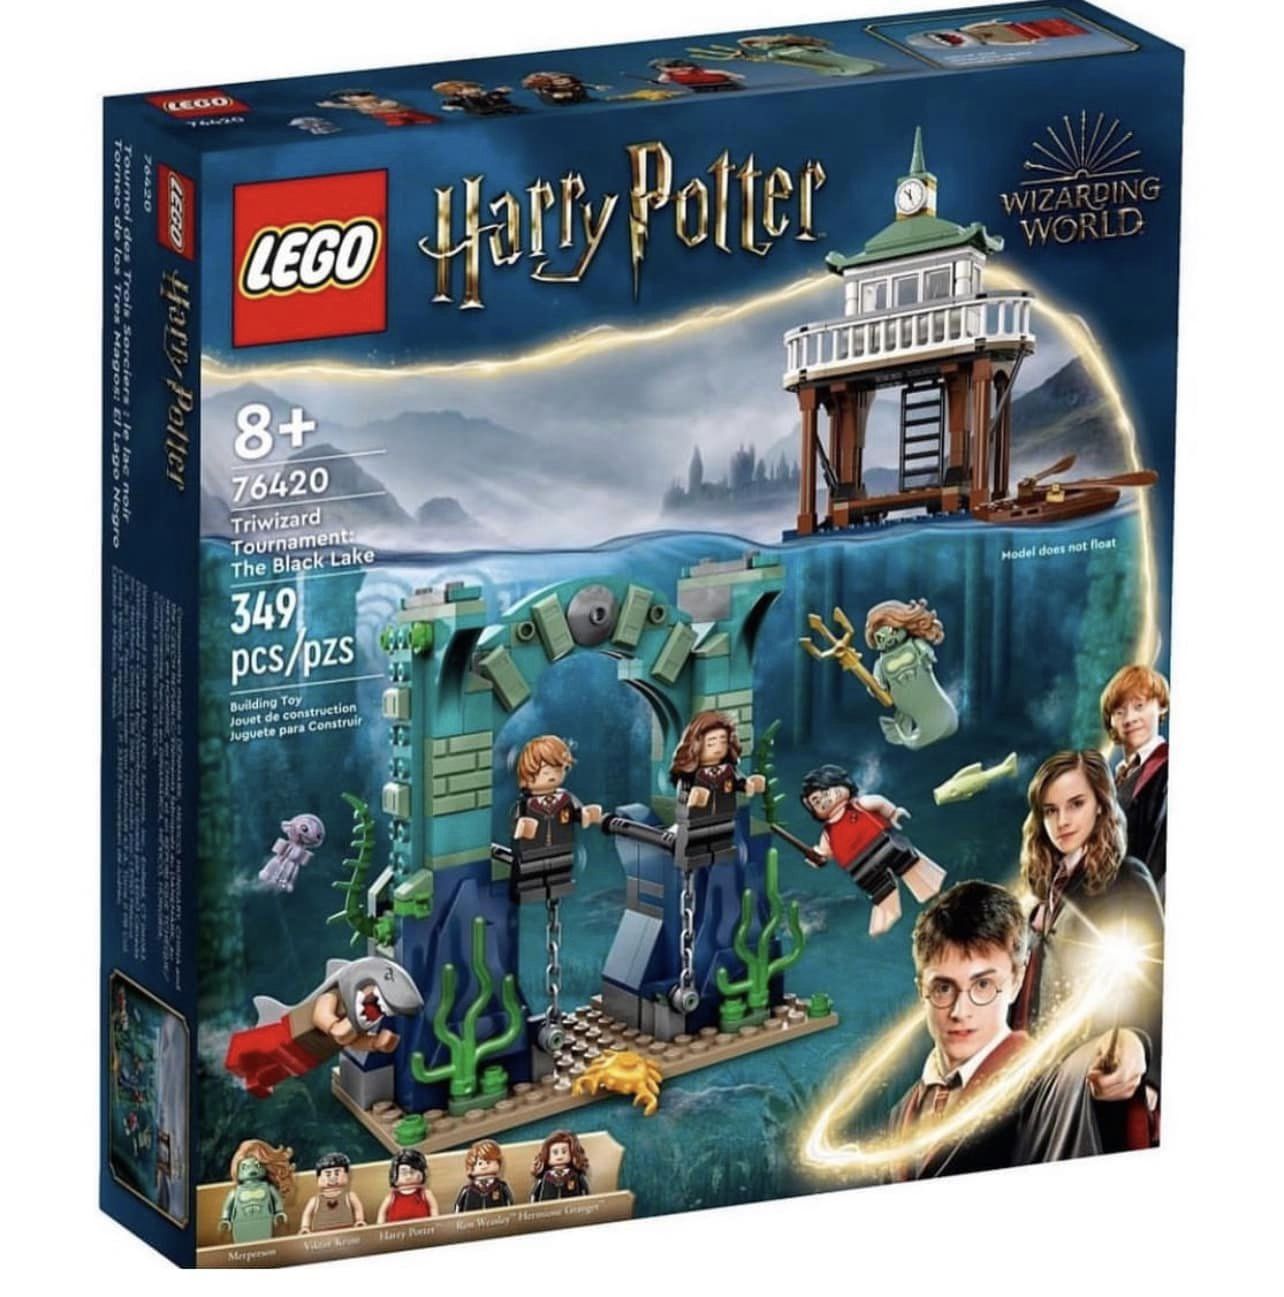 Presentati nuovi set LEGO Harry Potter - Il Mastro Costruttore